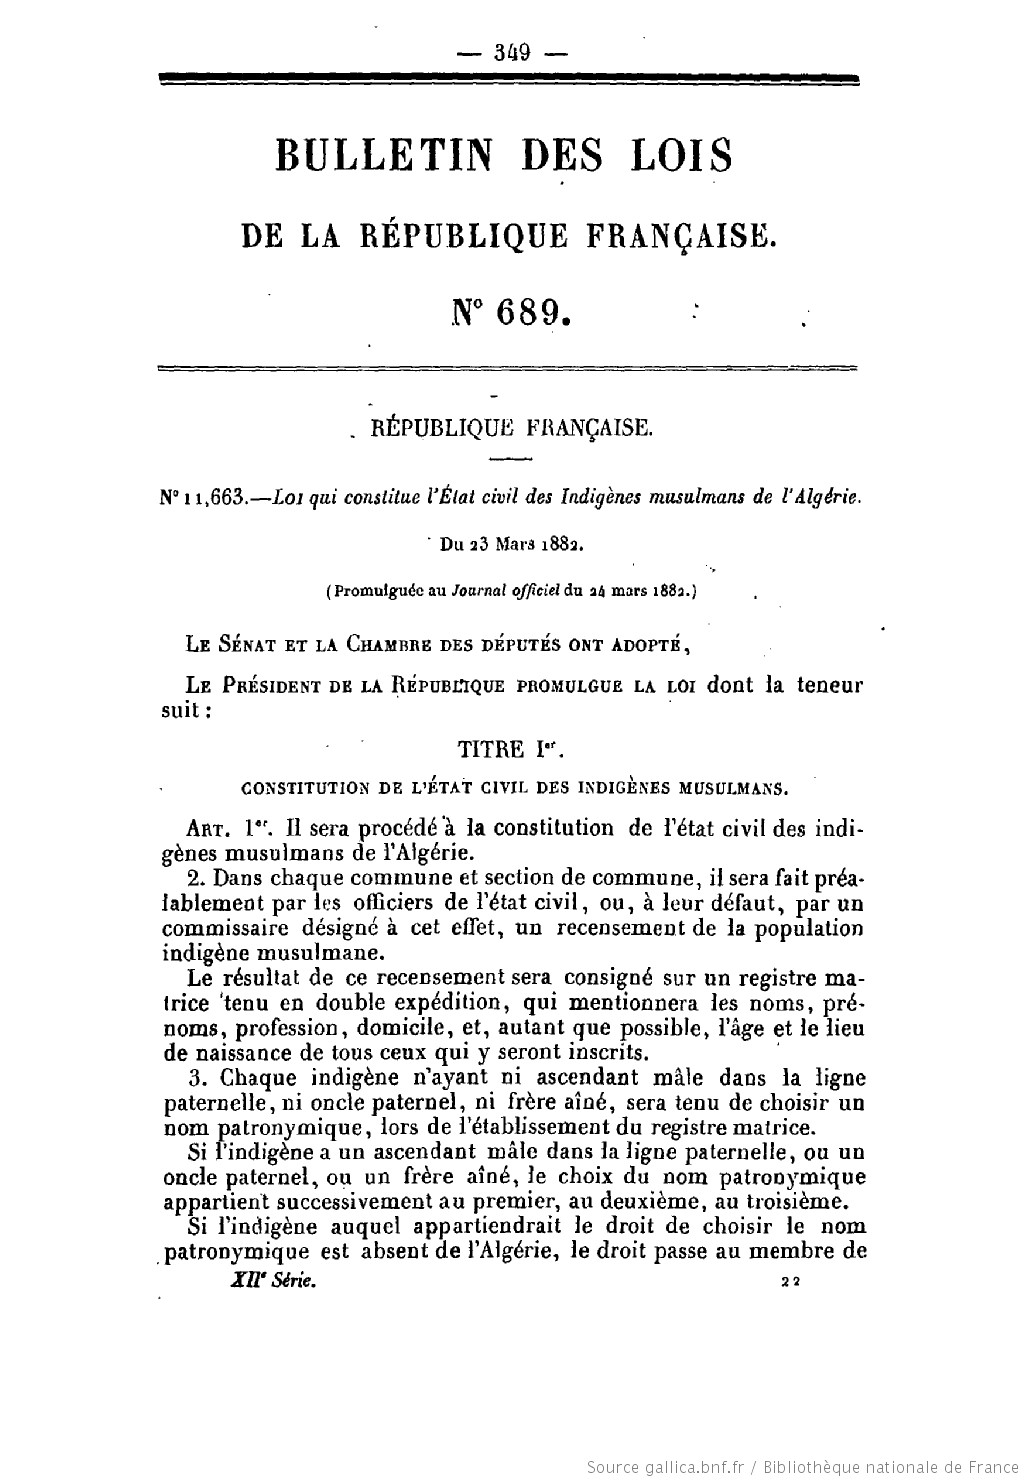 Bulletin_des_lois_1882_1.jpeg